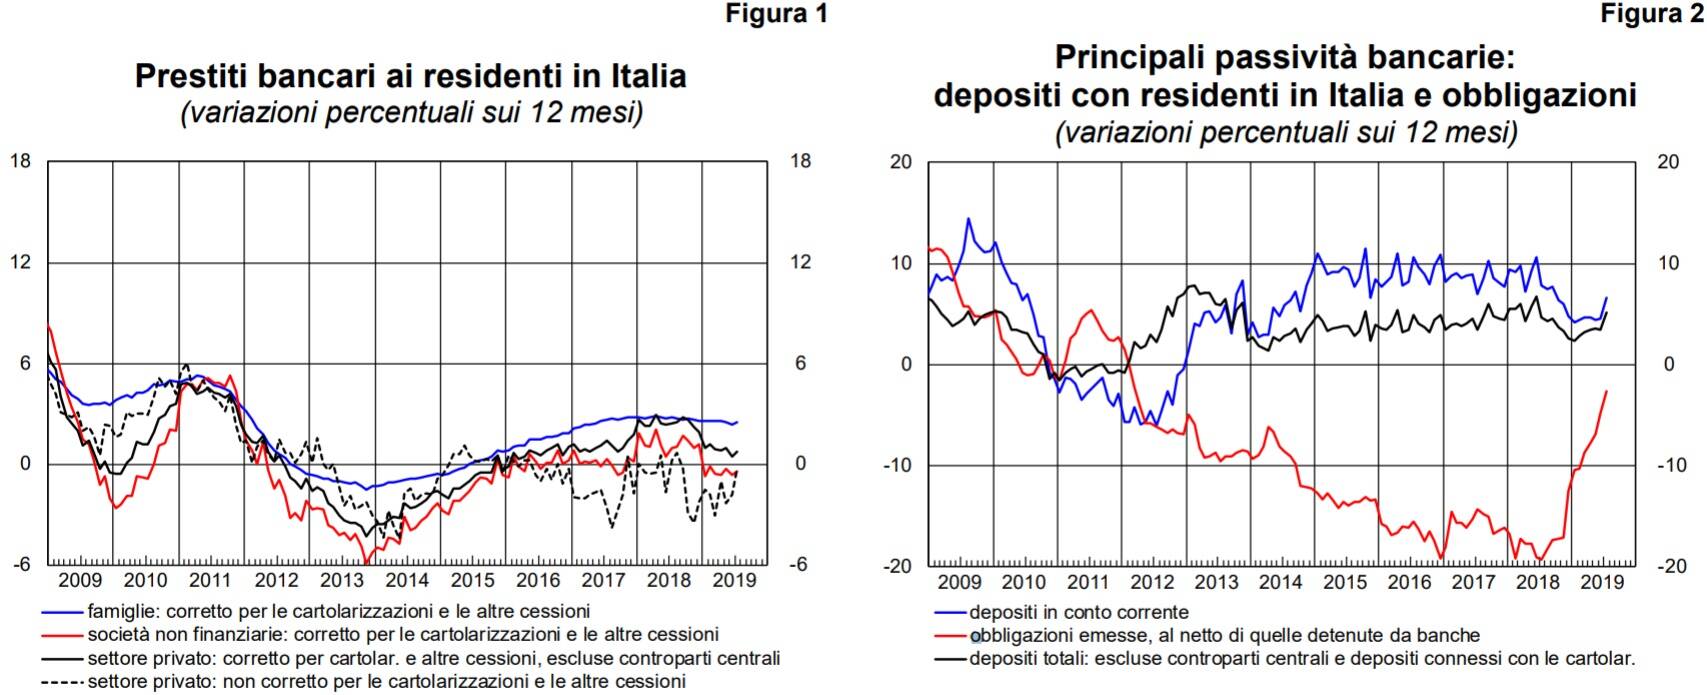 prestiti bancari italia